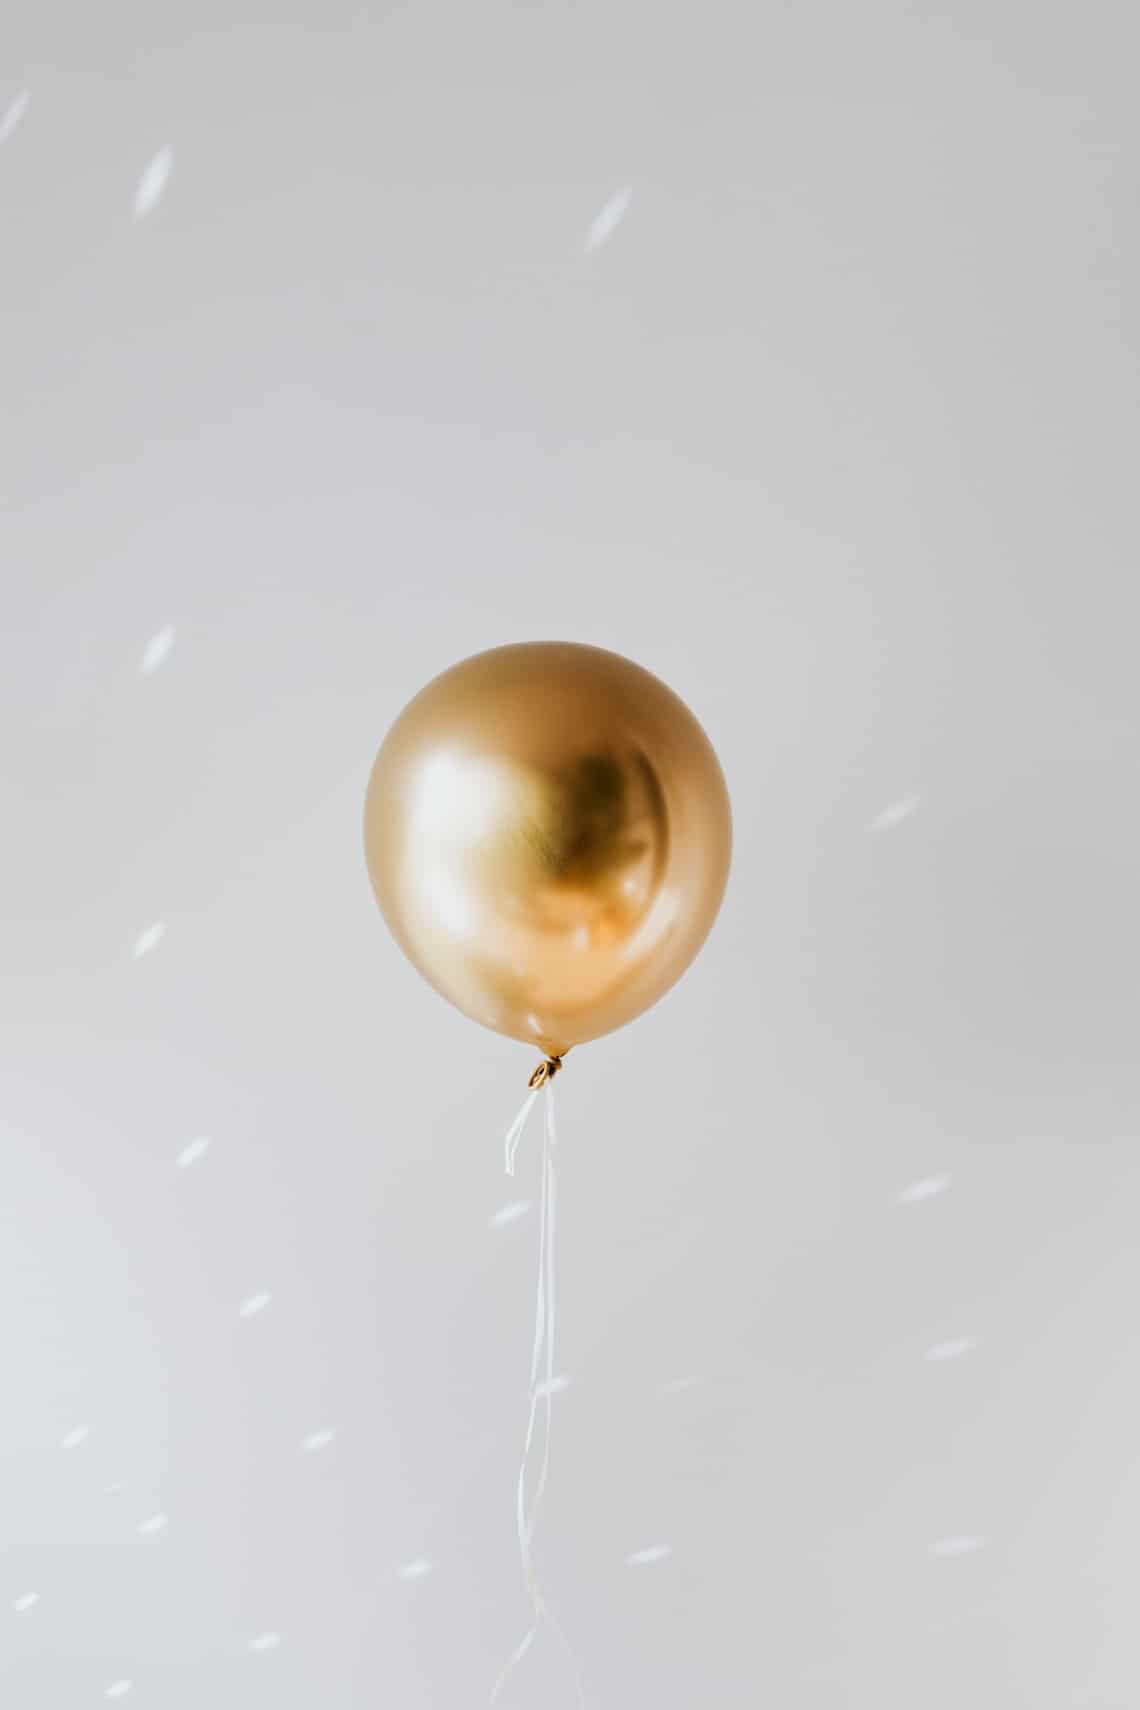 A luftballon